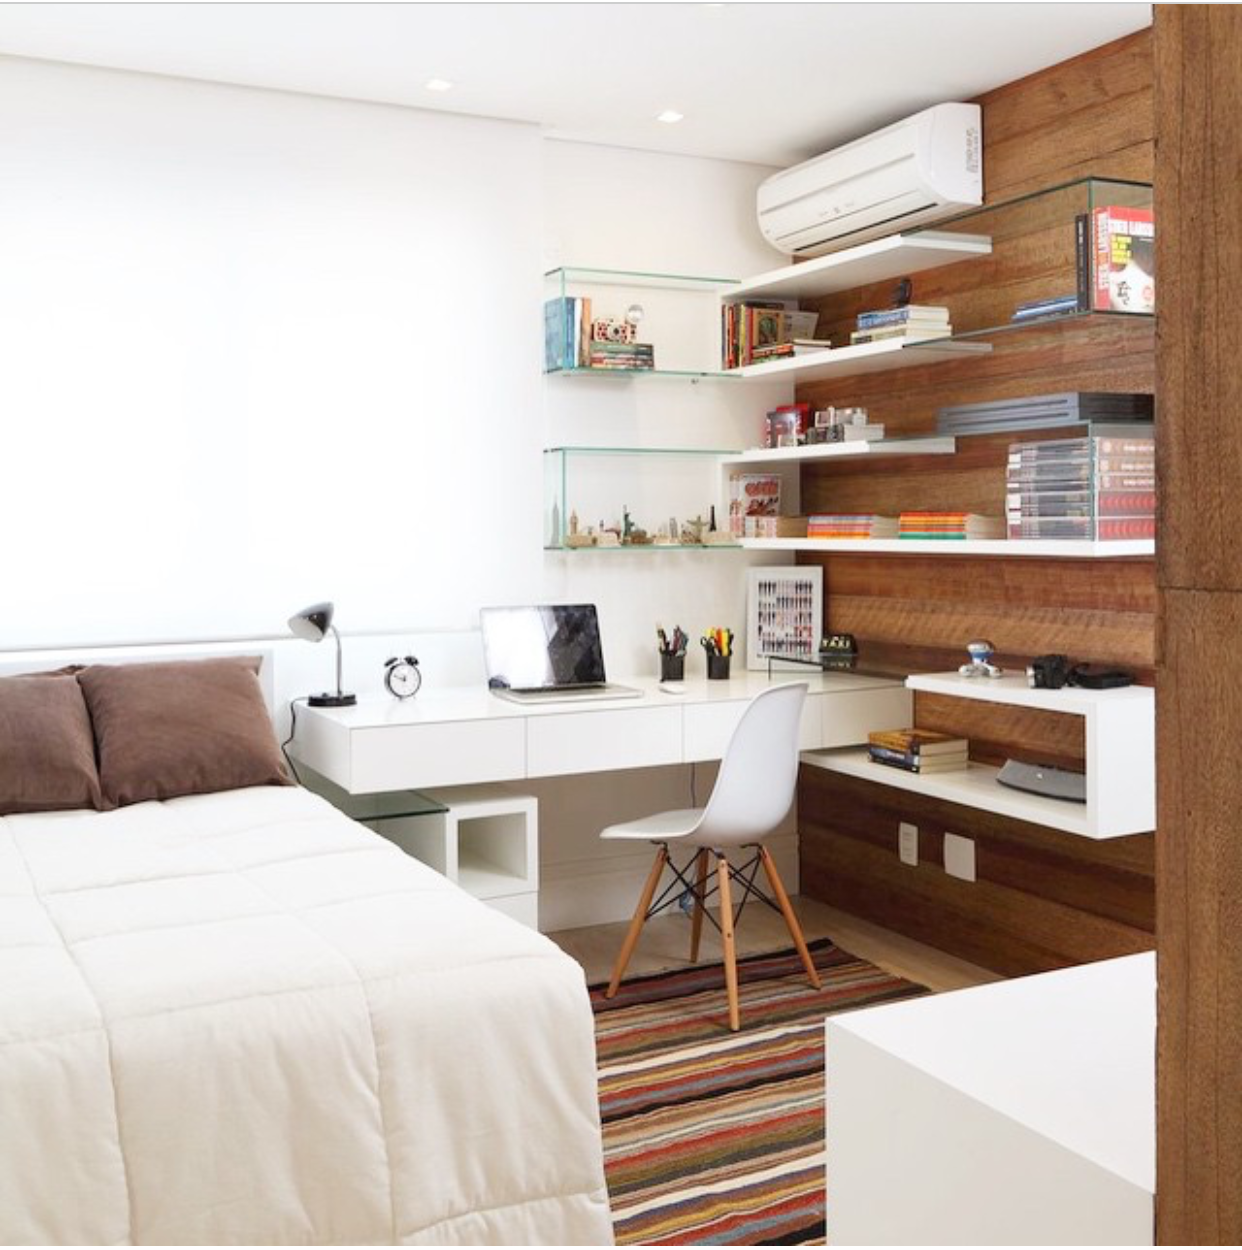 Дизайн кабинета: варианты расположения, идеи обустройства, выбор мебели, цвета, стиля